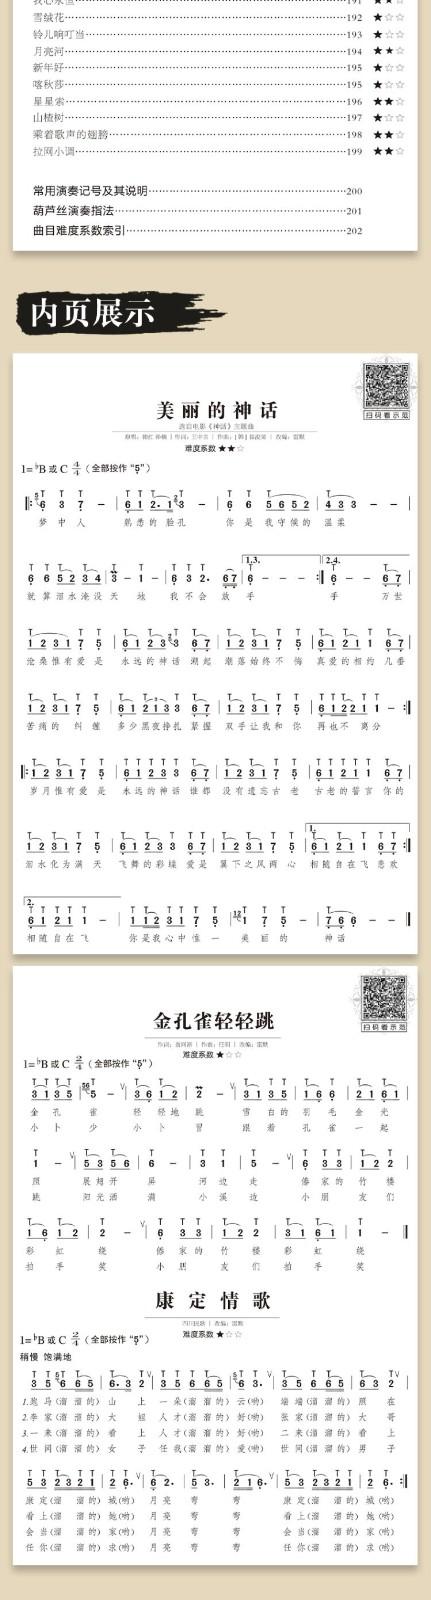 歌曲经典曲谱大全简谱曲集实用教程教最易演奏葫芦丝流行金曲176首